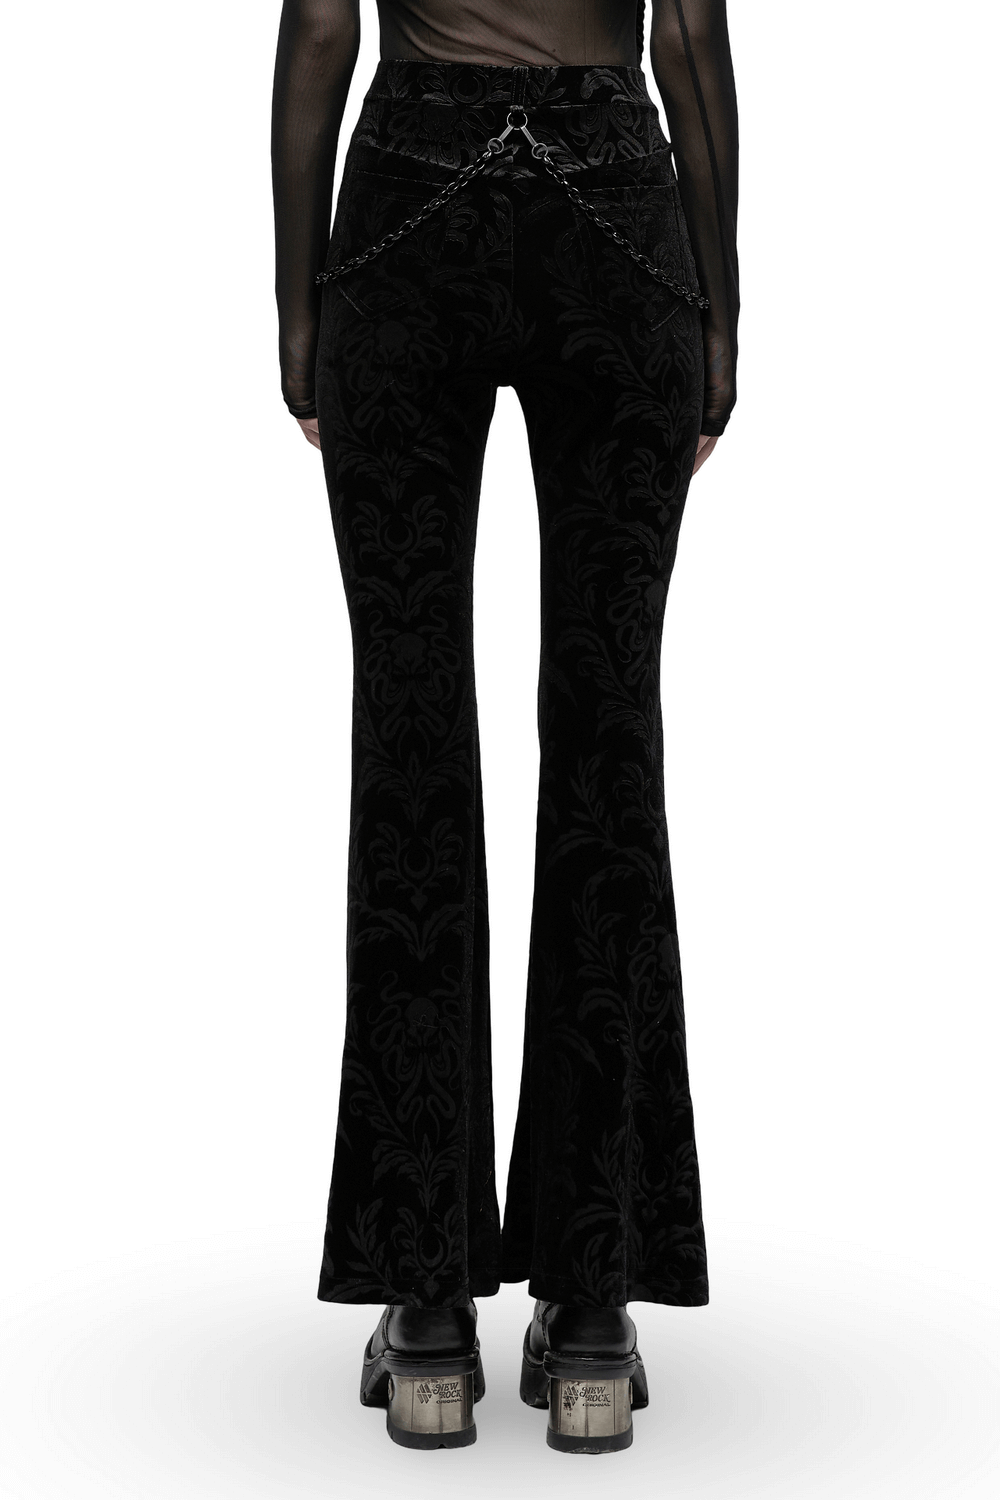 Pantalon évasé en velours fleuri noir avec chaînes et taille en maille